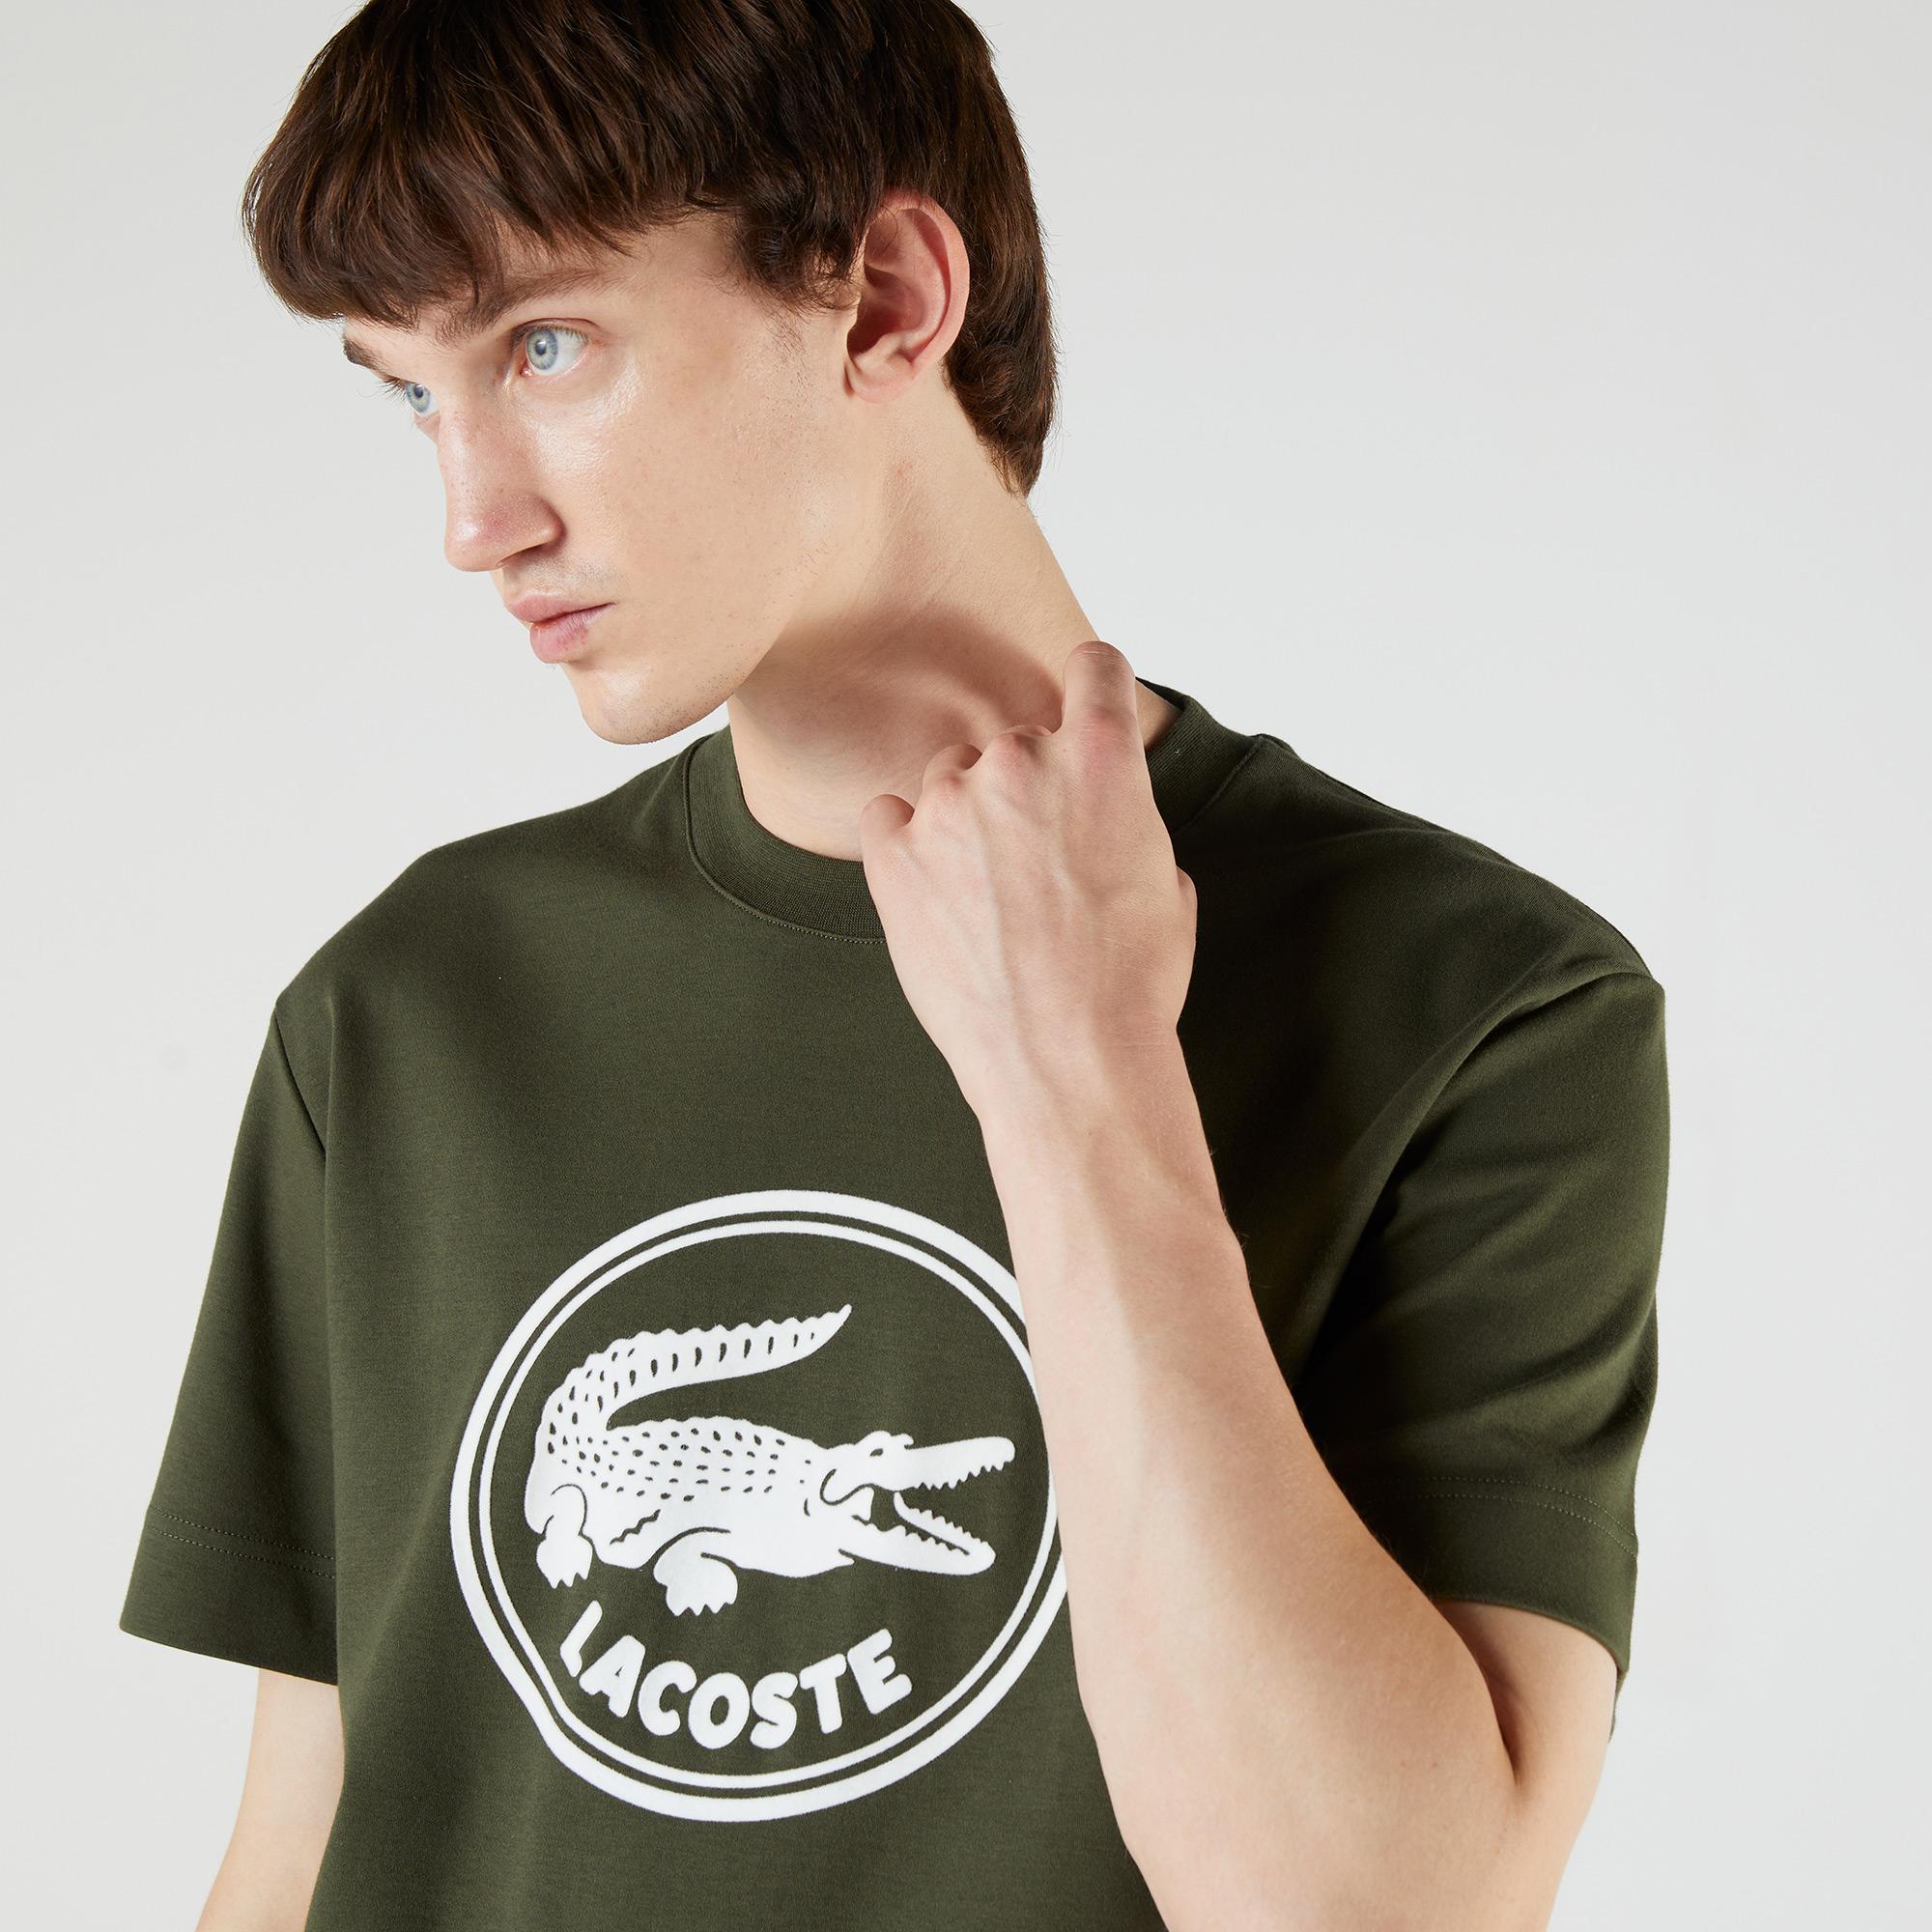 Lacoste Men's T-shirt. 2